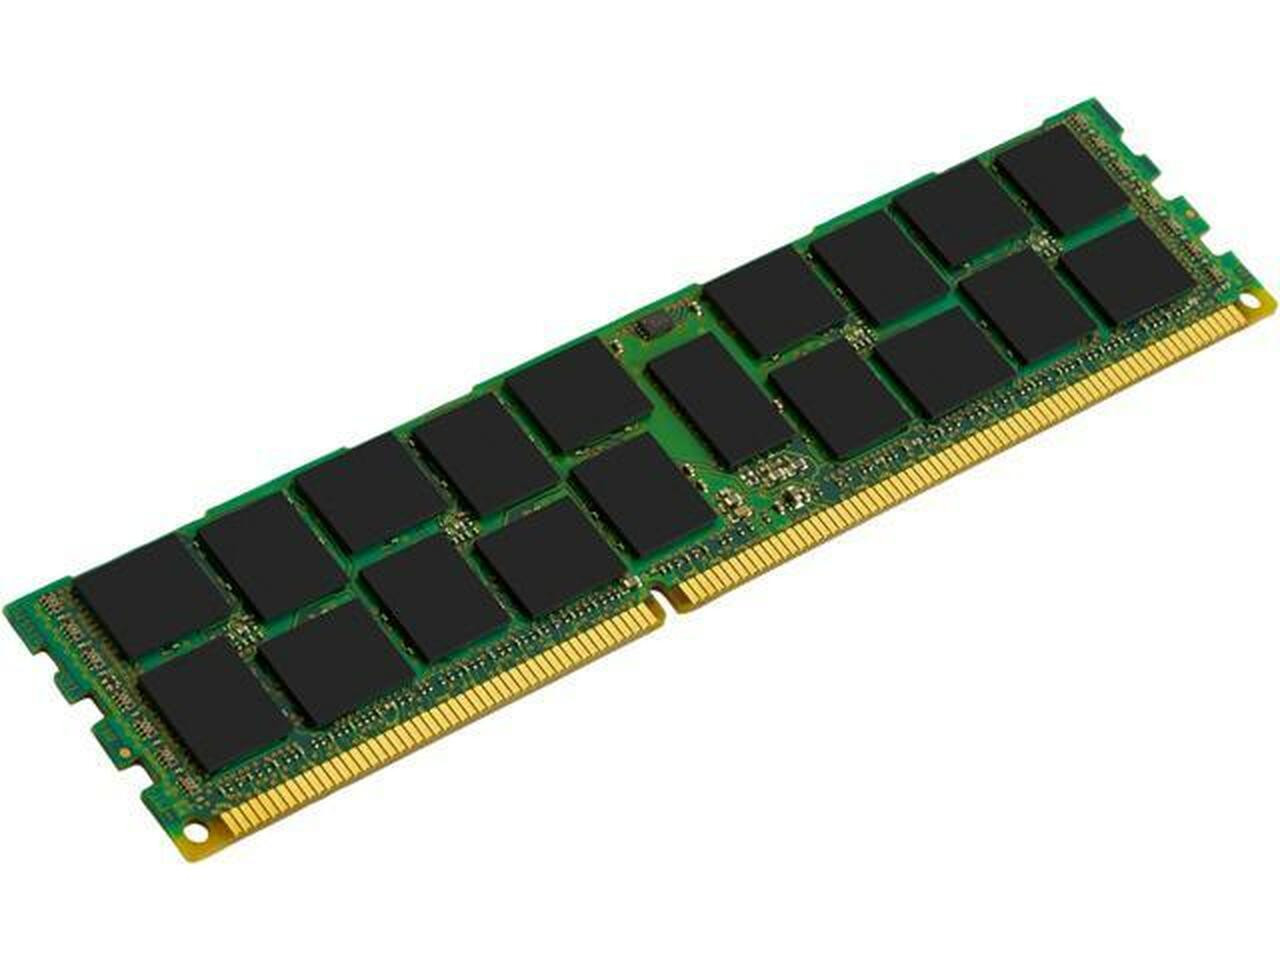 Netpatibles 8GB DDR4 SDRAM Memory Module - S26361-F3909-L105NPM